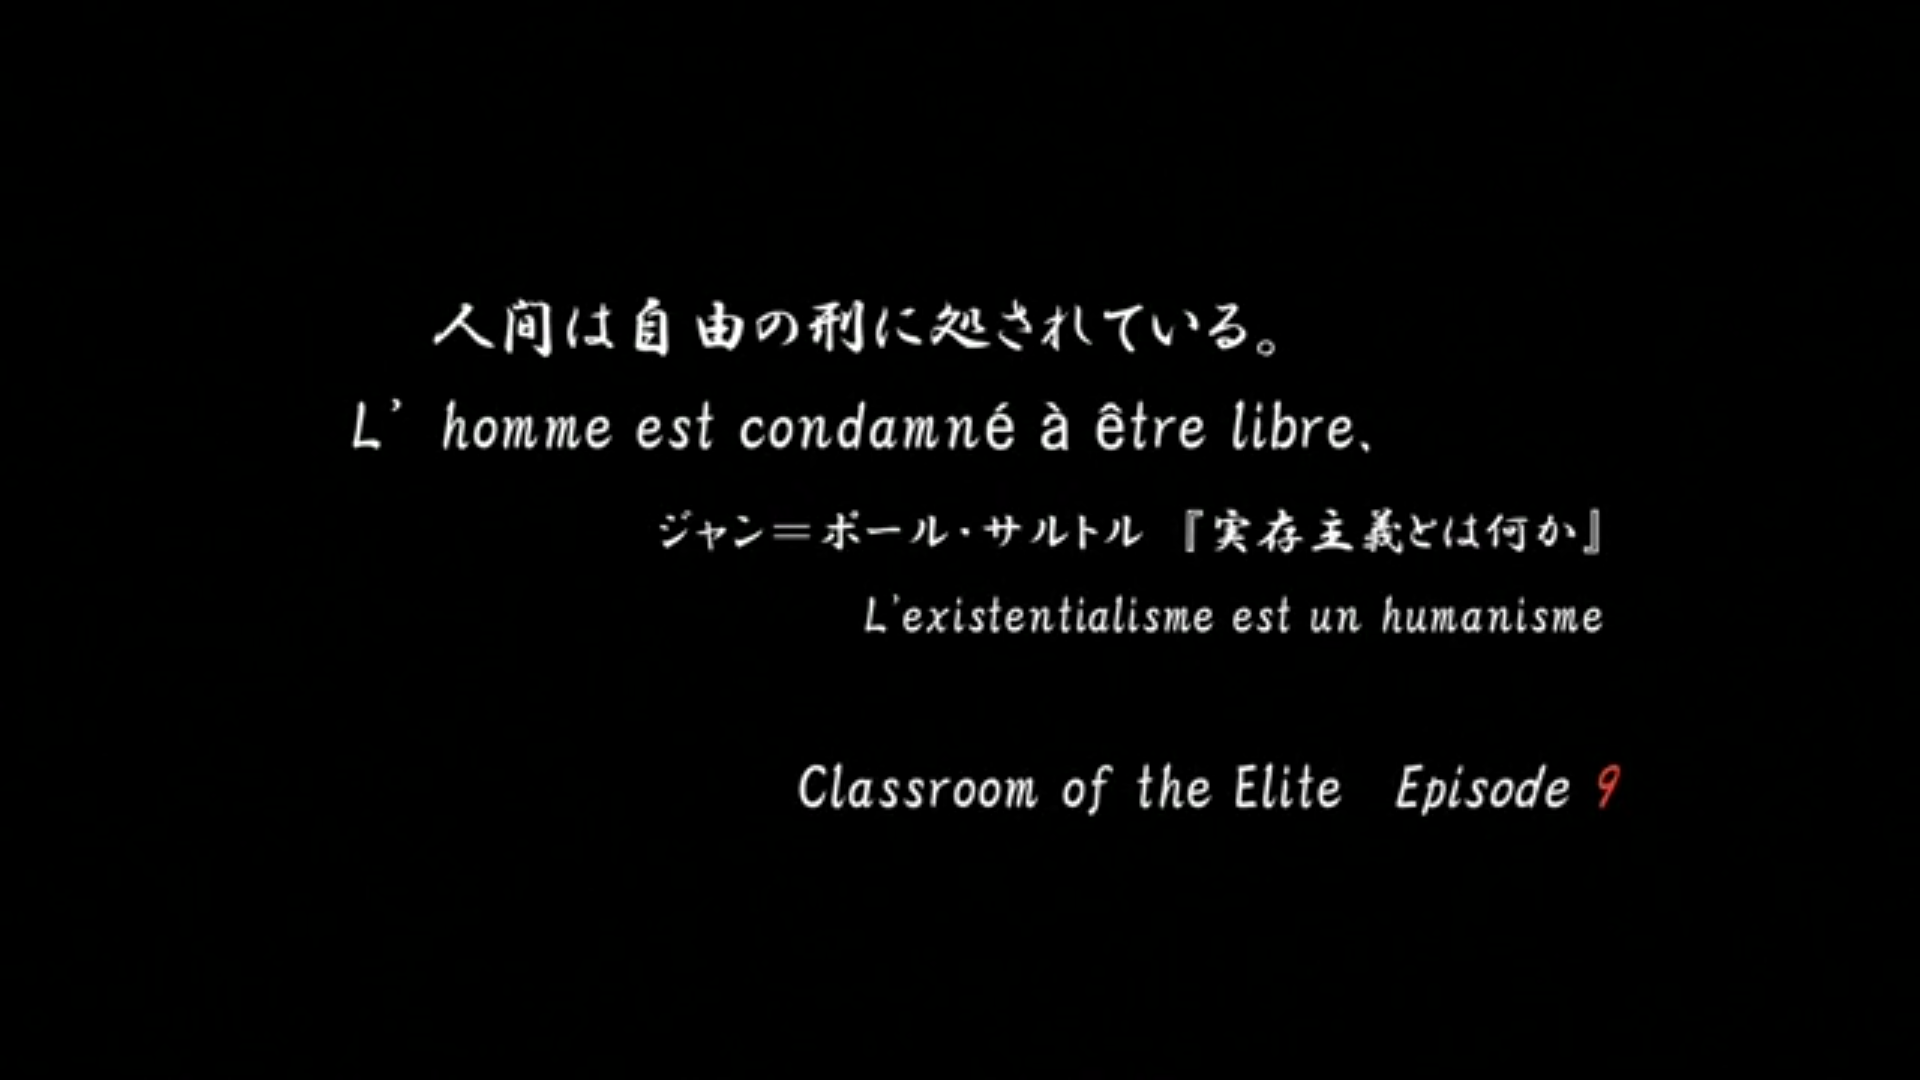 ようこそ実力至上主義の教室へ 第9話 「人間は自由の刑に処されている。」 | 平のアニメ・オタク情報